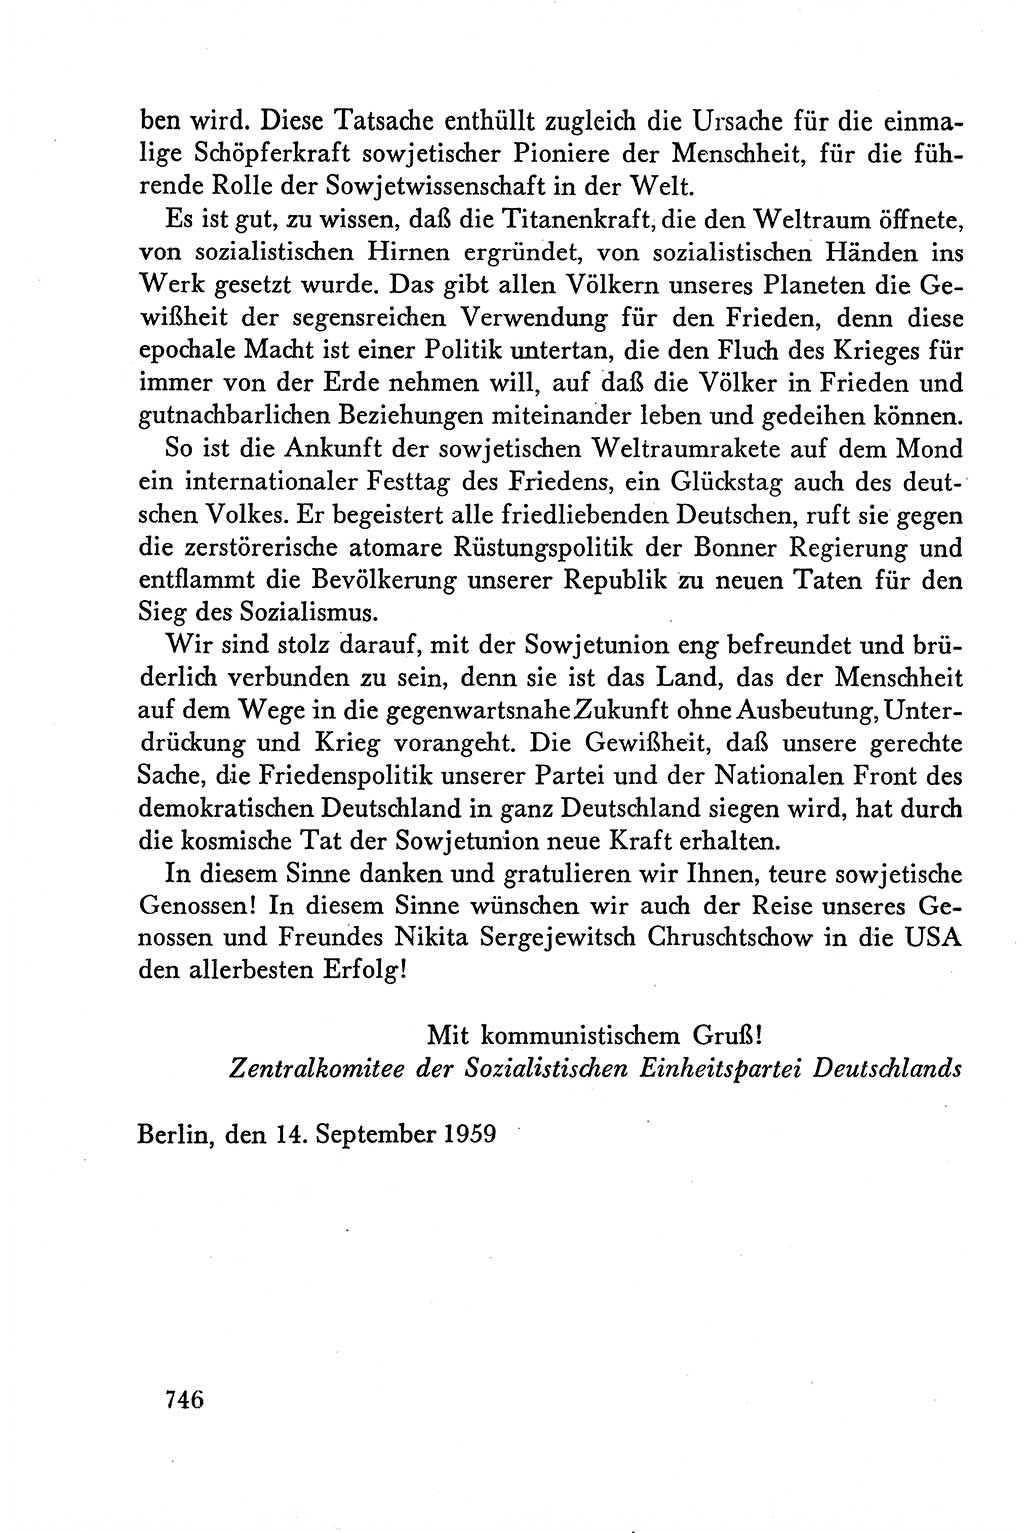 Dokumente der Sozialistischen Einheitspartei Deutschlands (SED) [Deutsche Demokratische Republik (DDR)] 1958-1959, Seite 746 (Dok. SED DDR 1958-1959, S. 746)